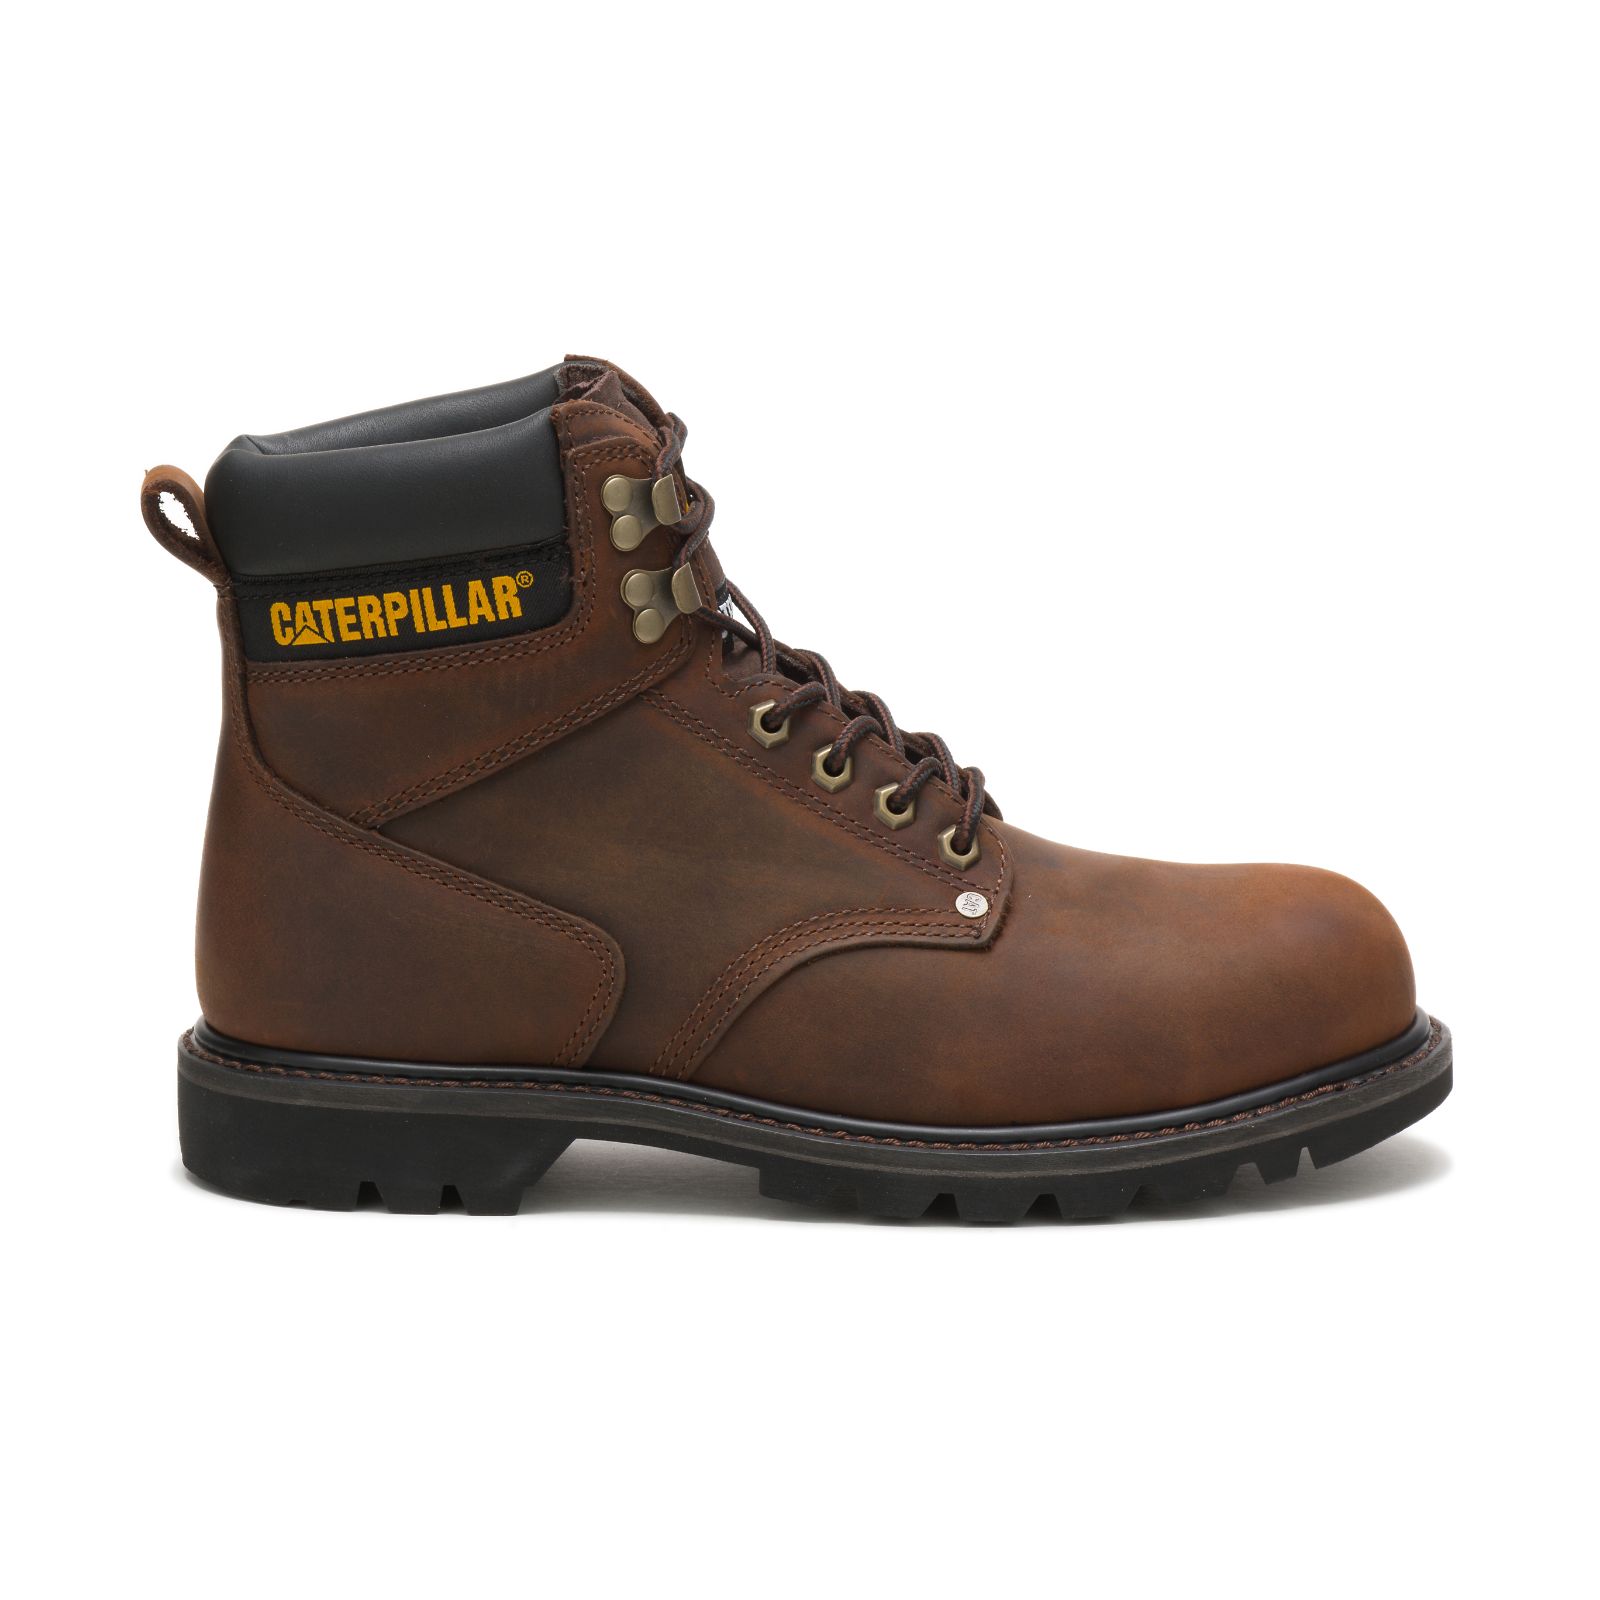 Men's Caterpillar Second Shift Steel Toe Work Boots Dark Brown | Cat-973564